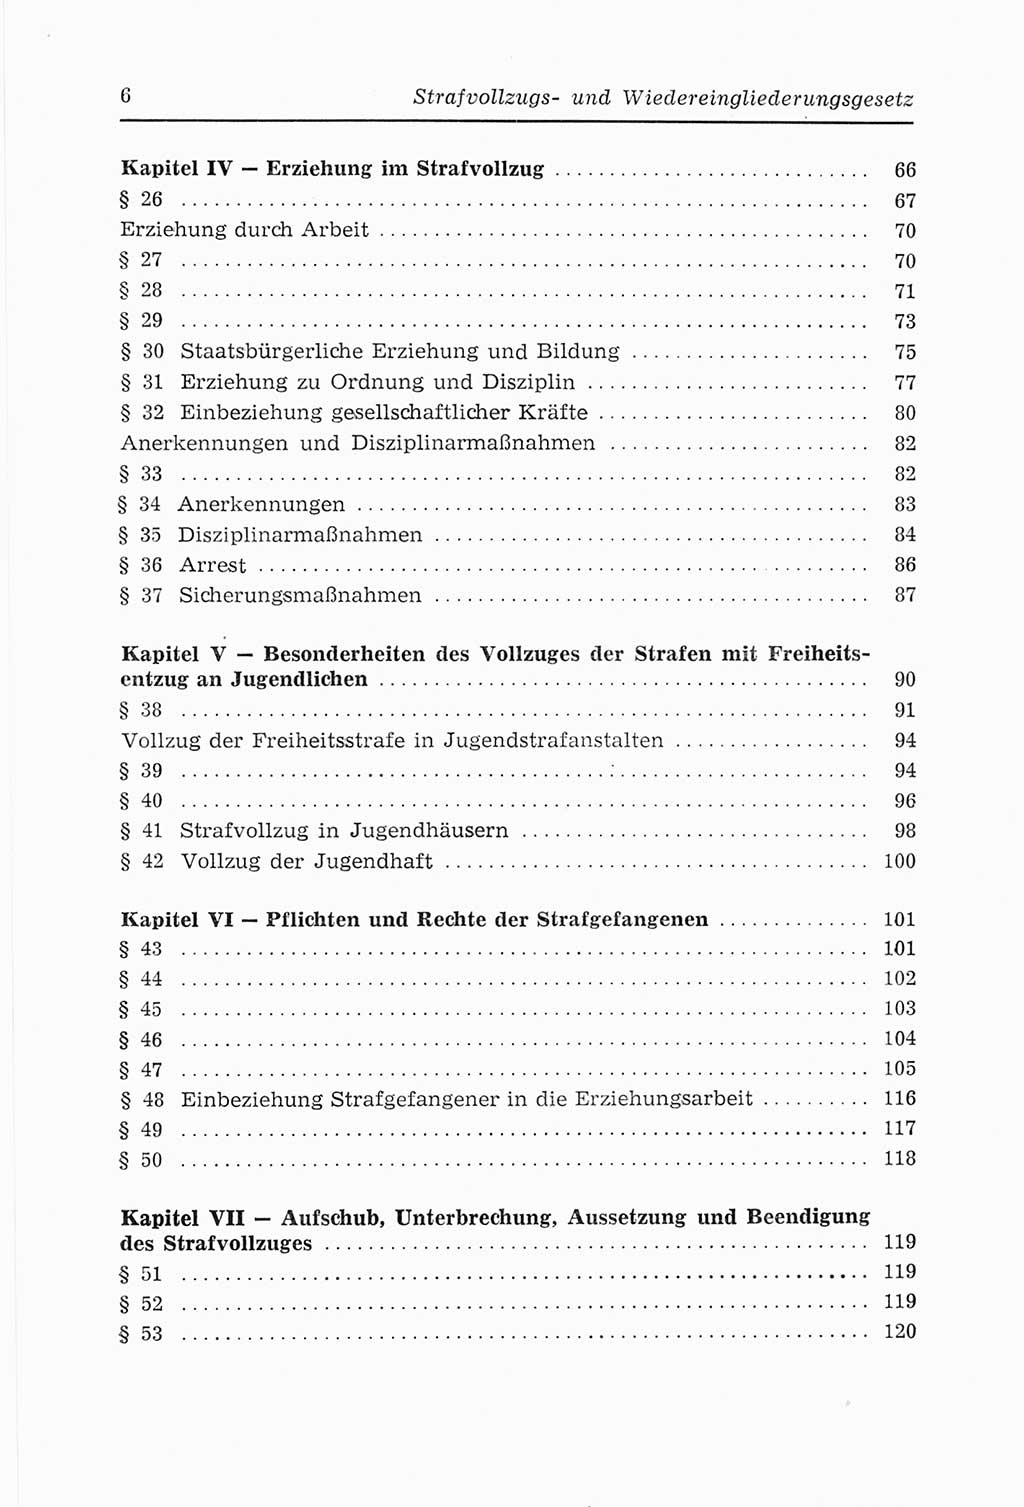 Strafvollzugs- und Wiedereingliederungsgesetz (SVWG) der Deutschen Demokratischen Republik (DDR) 1968, Seite 6 (SVWG DDR 1968, S. 6)